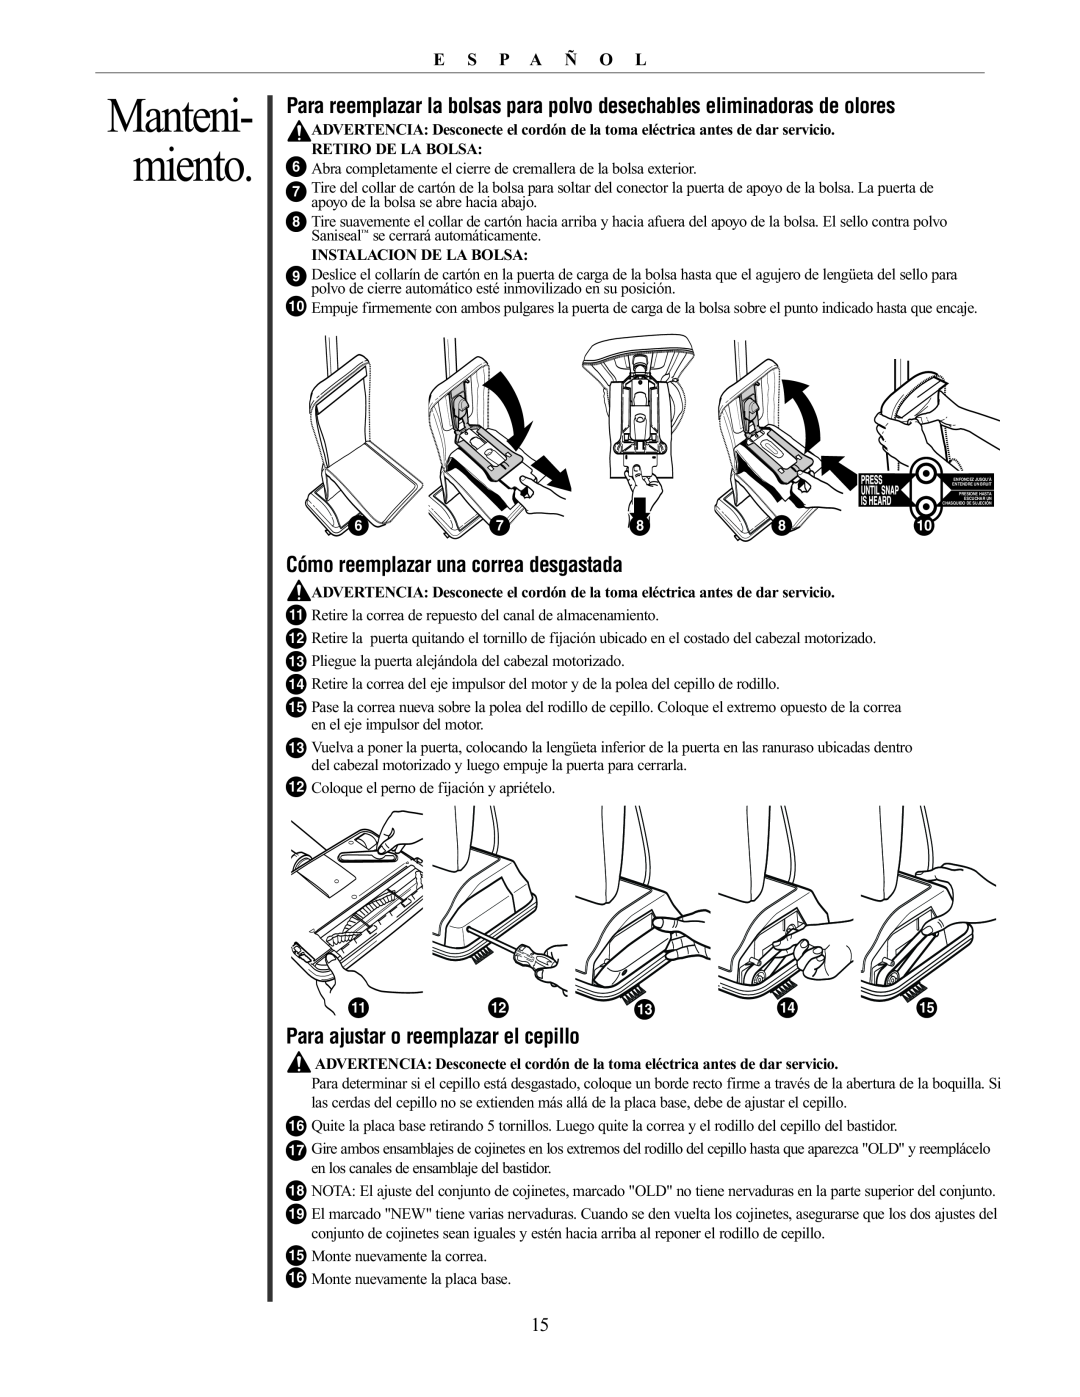 Oreck 76011-01REVC manual miento, Manteni, Cómo reemplazar una correa desgastada, Para ajustar o reemplazar el cepillo 